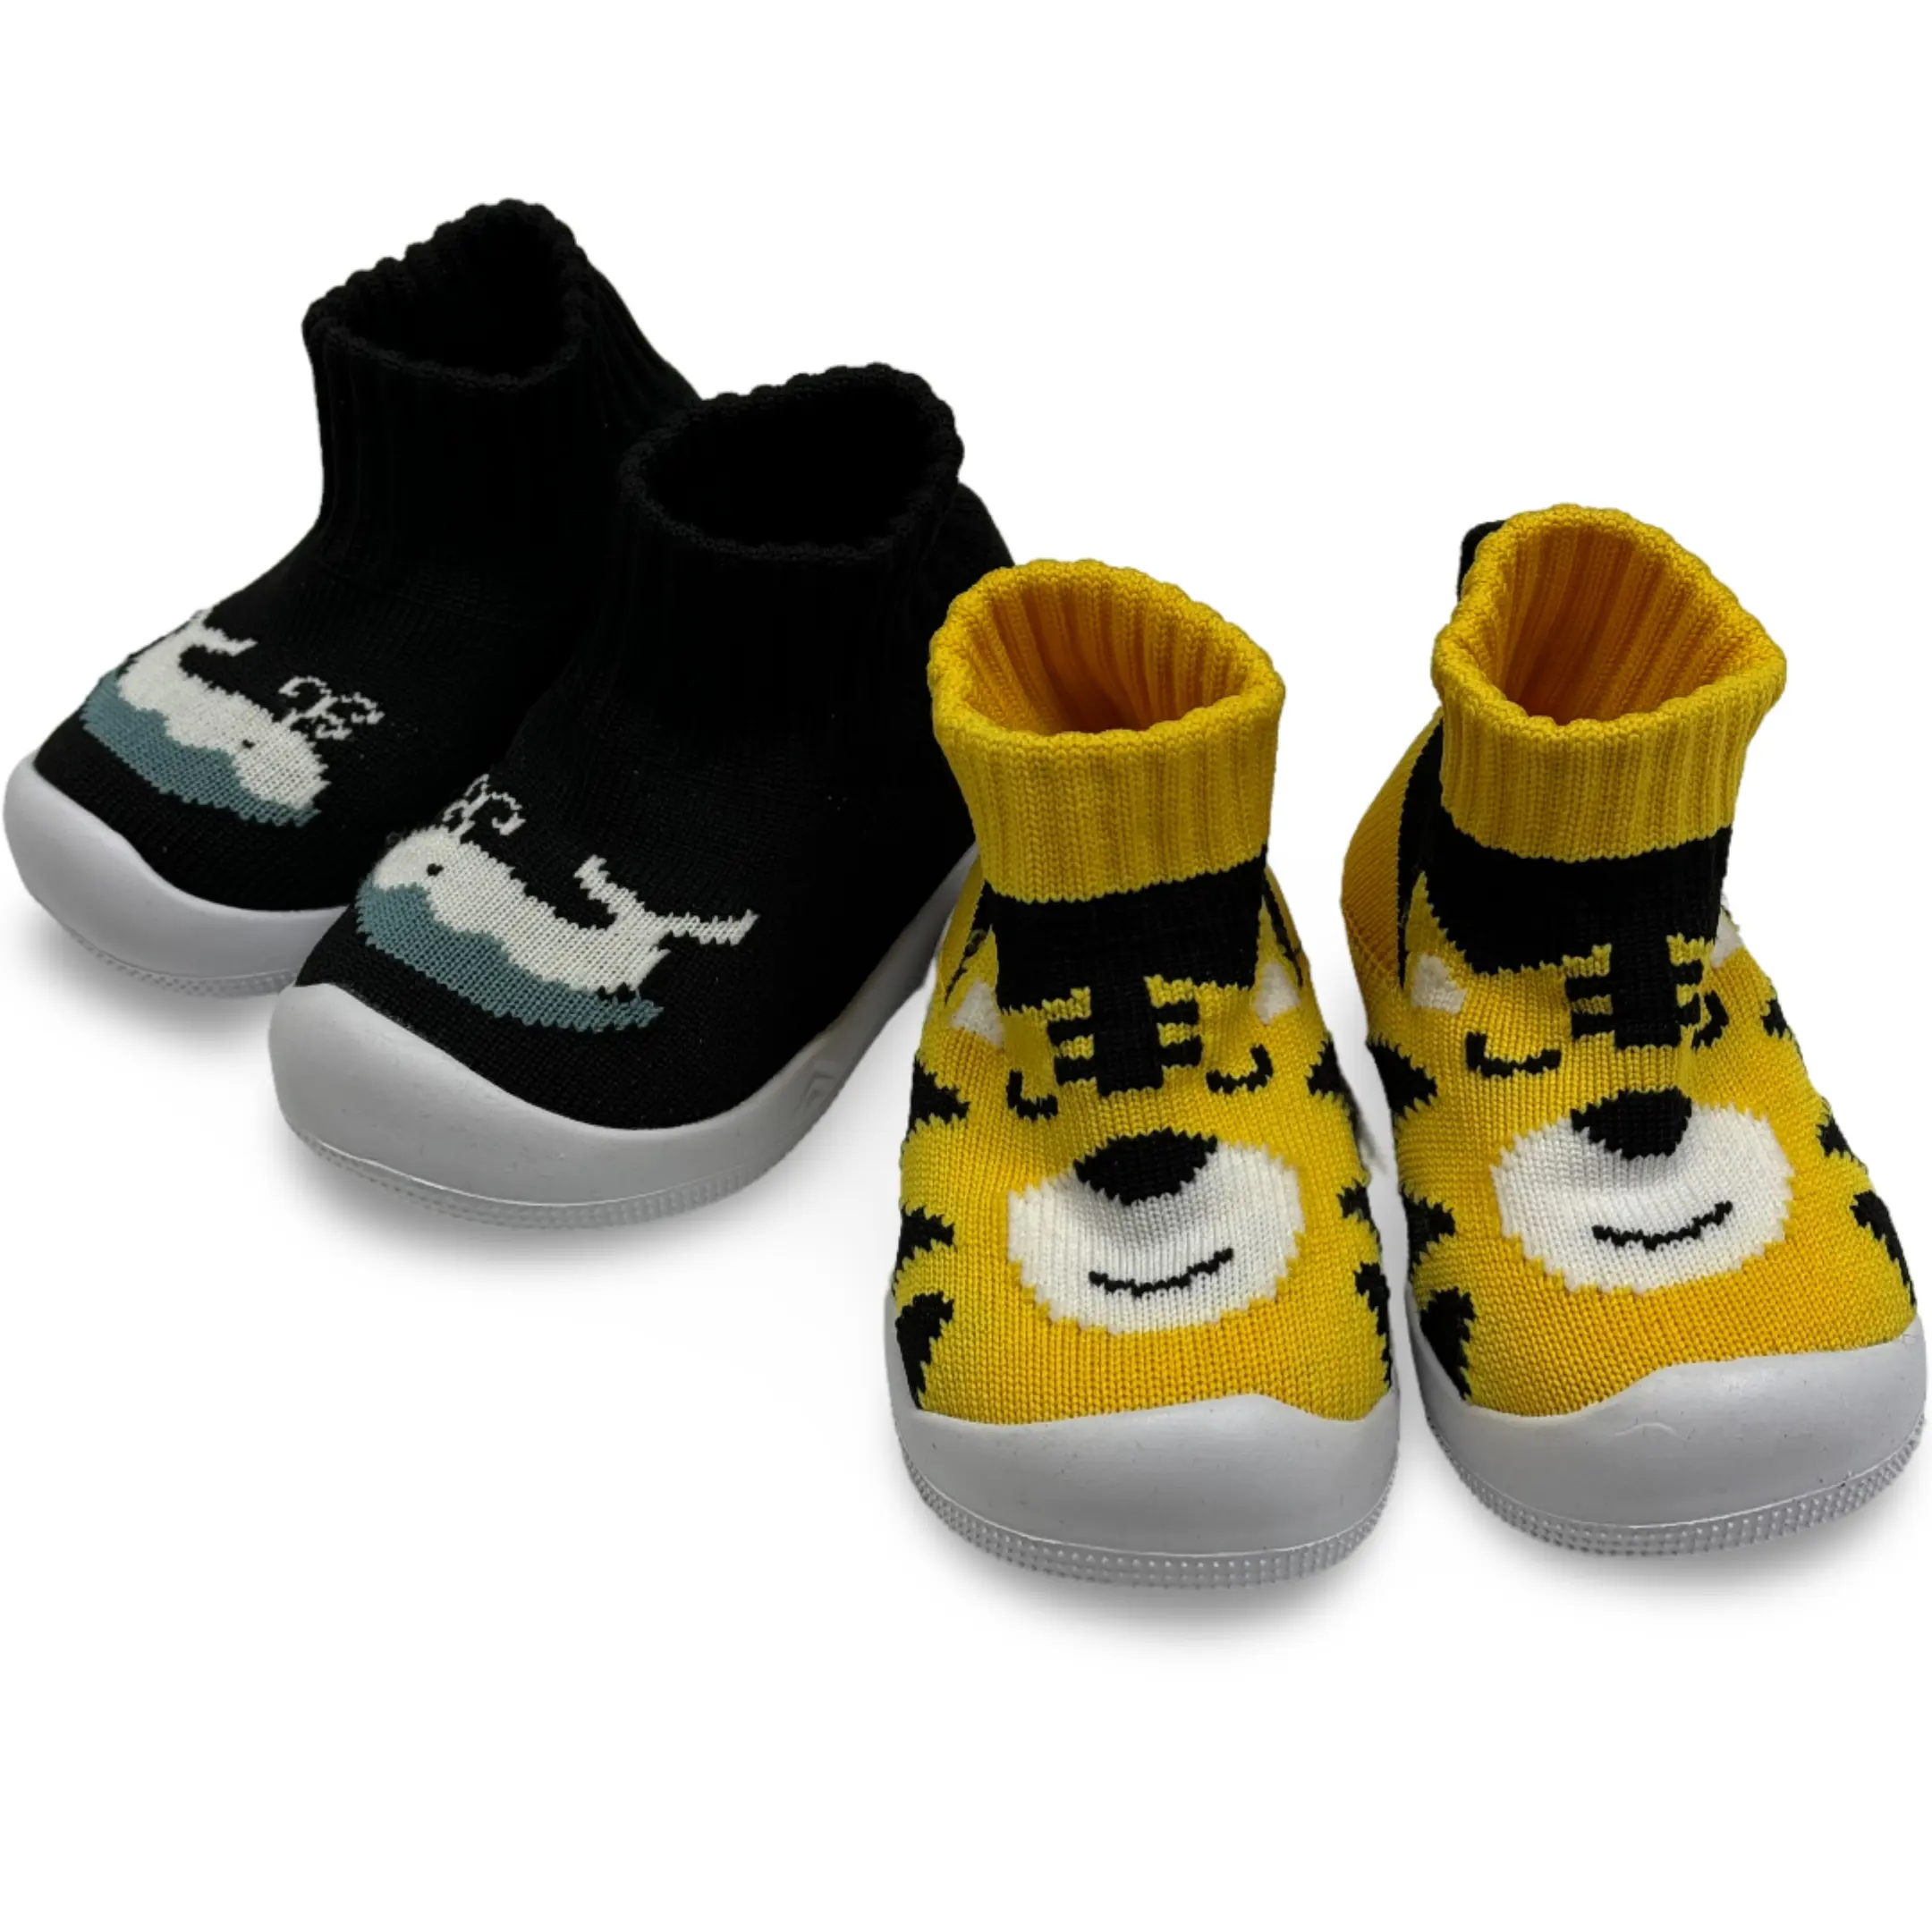 メモリーインソール付き幼児通気性弾性靴ソックスつま先を保護パンダタイガーフライニットローボードシューズ